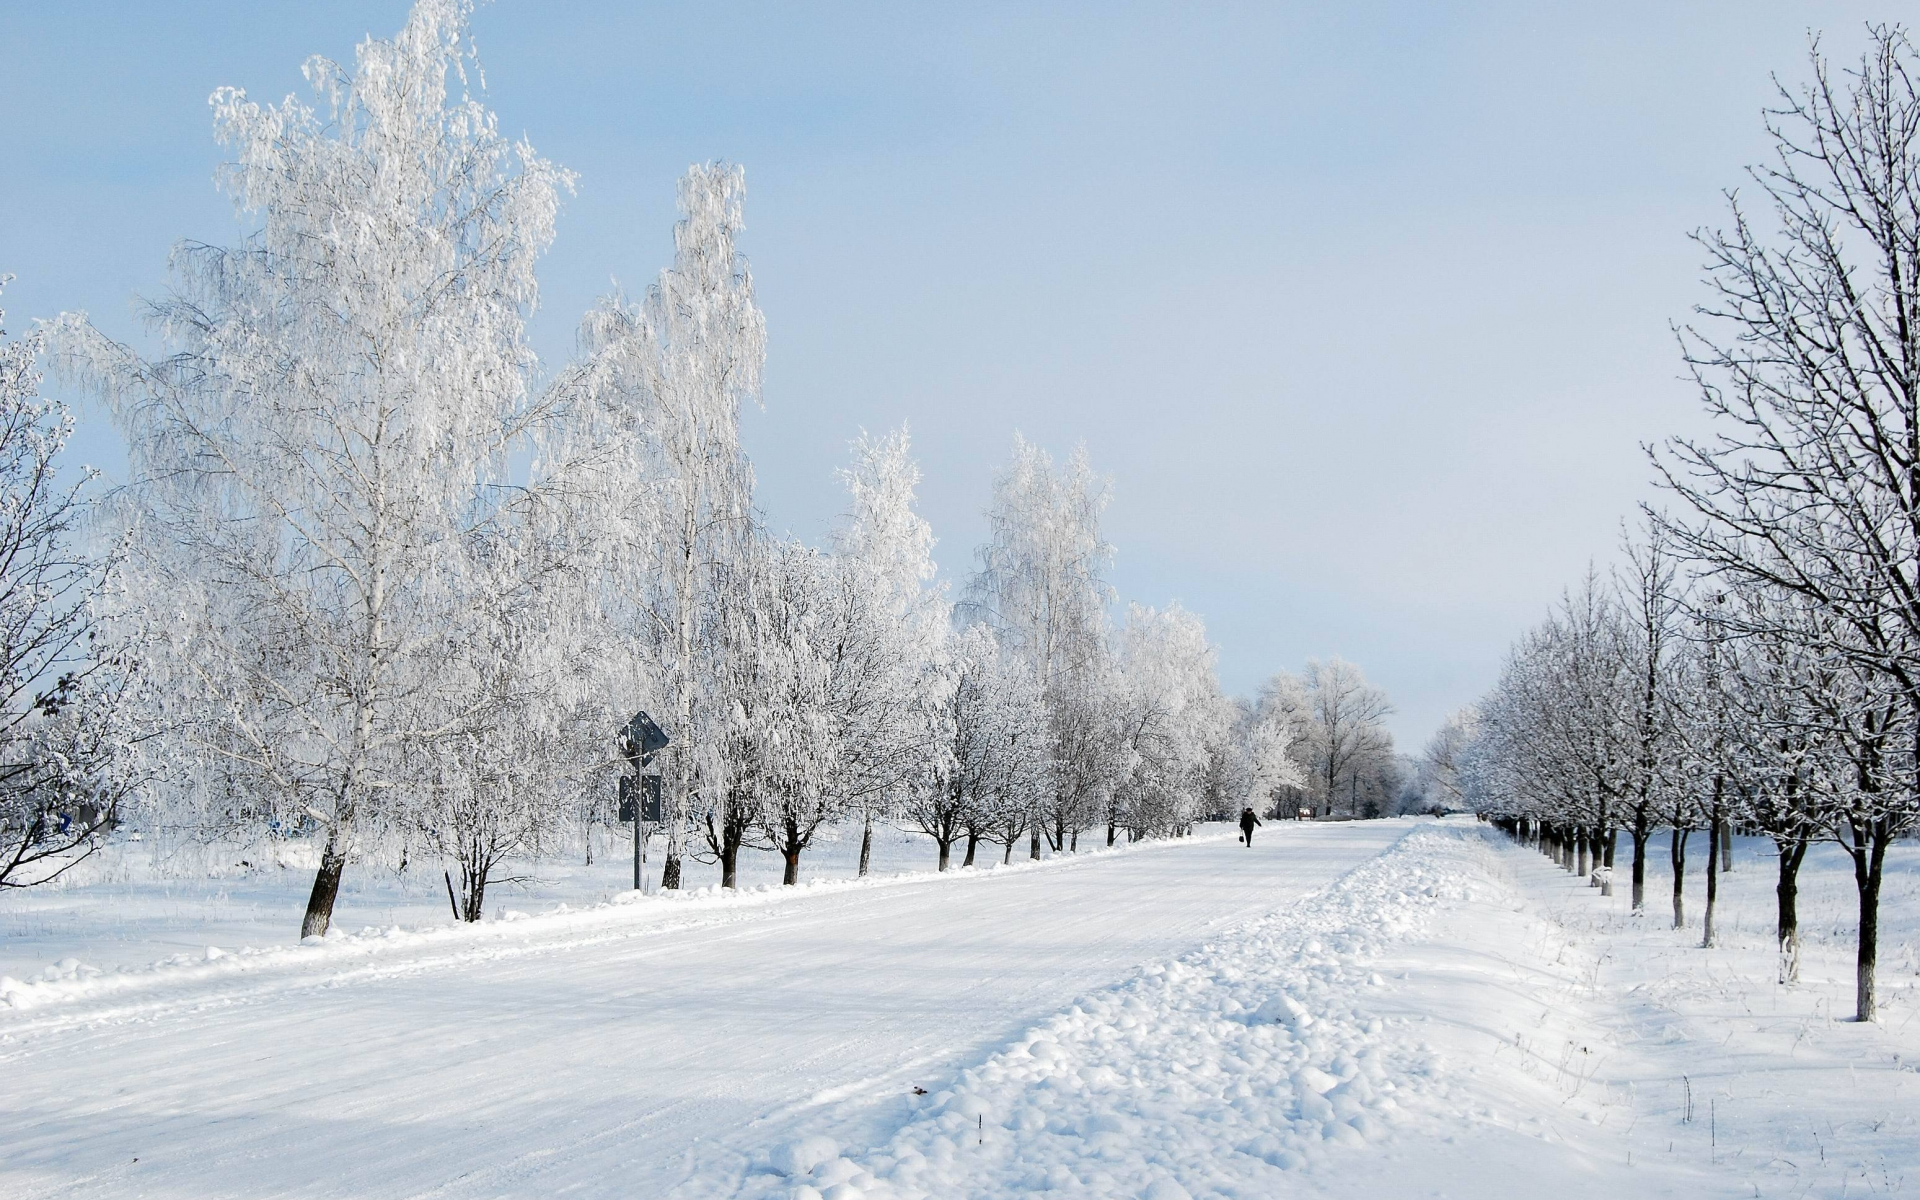 电脑主题图片大全 冬季雪景唯美自然风光图片(8)